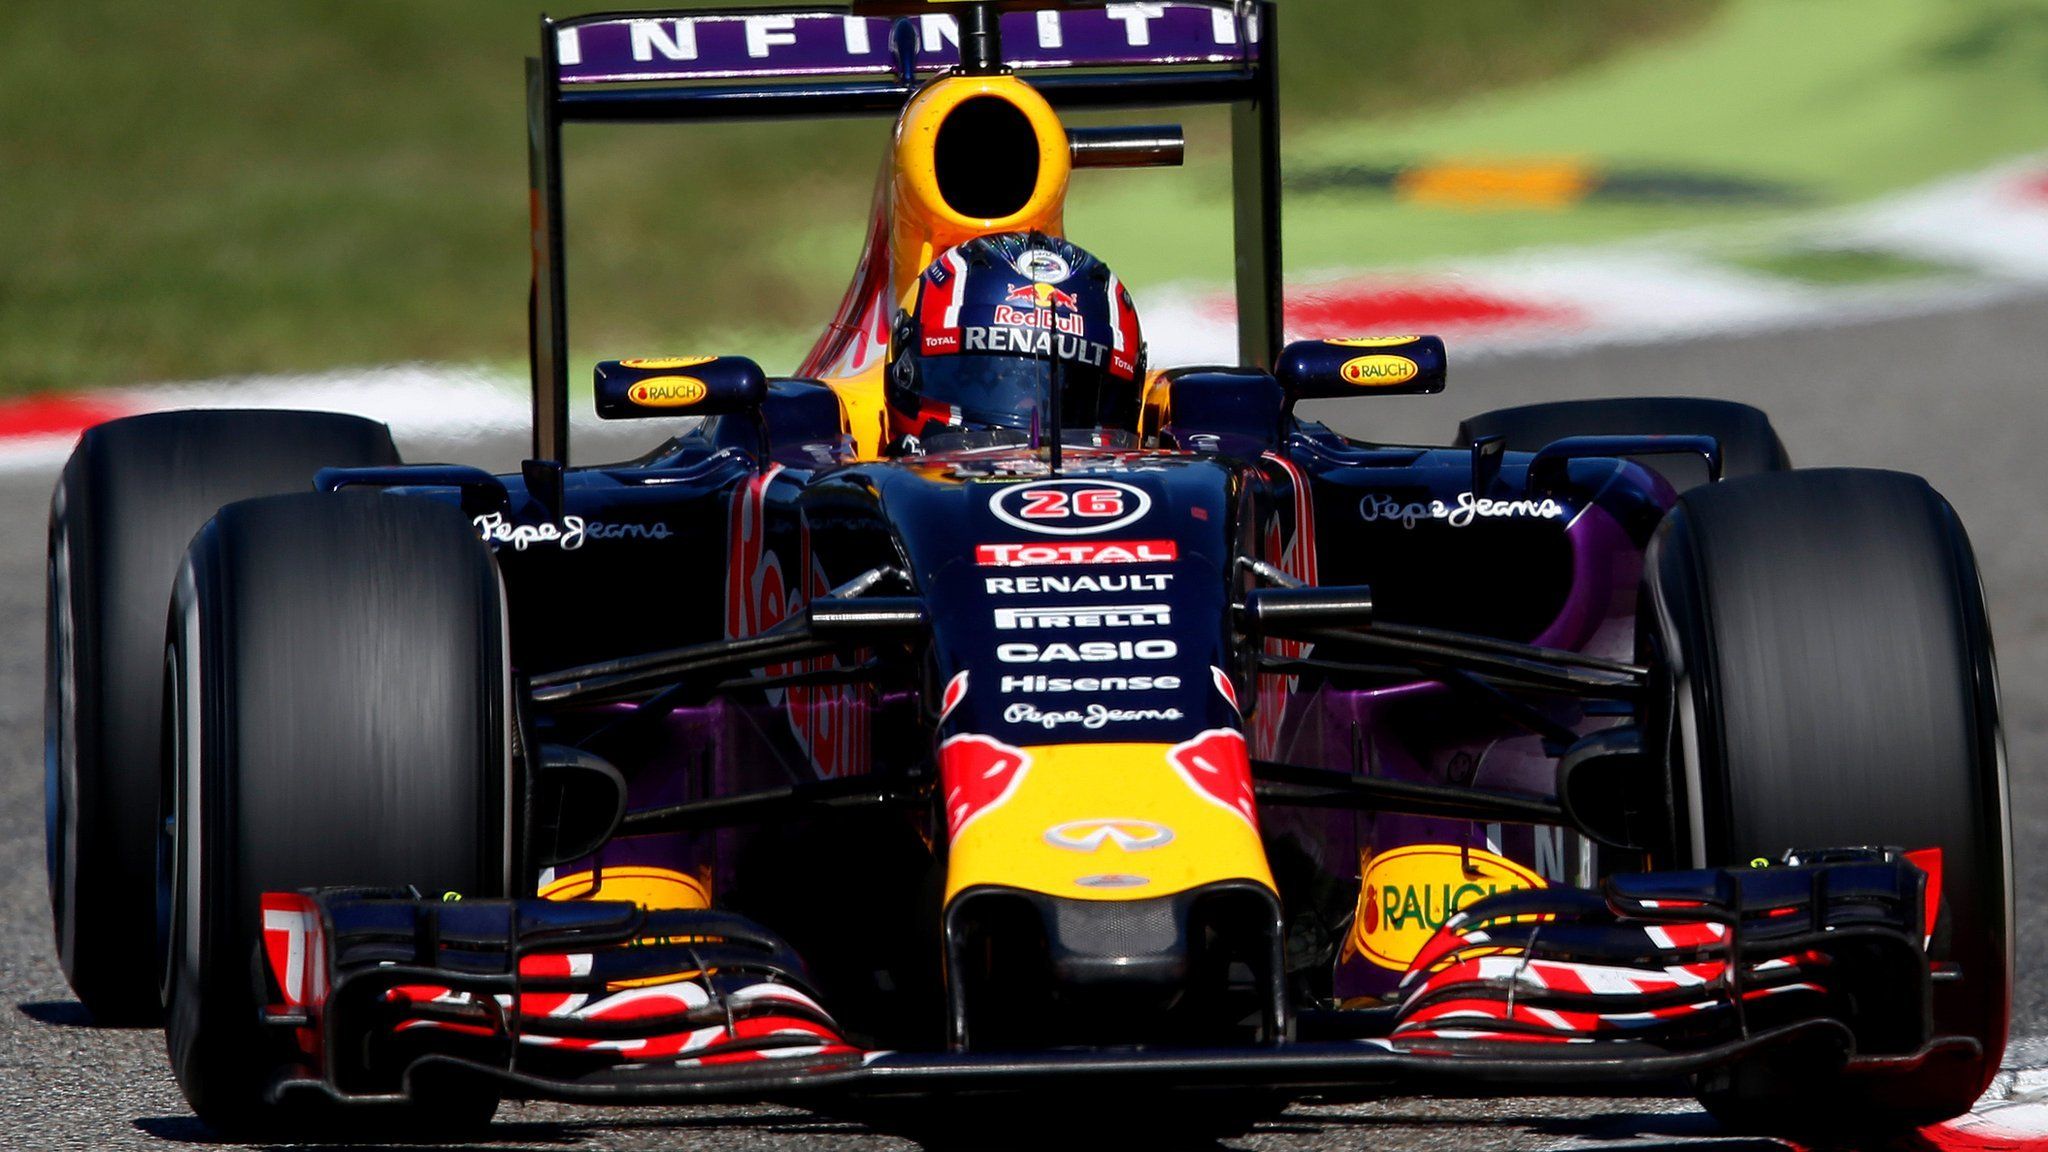 F1 driver Daniil Kvyat in action for Red Bull